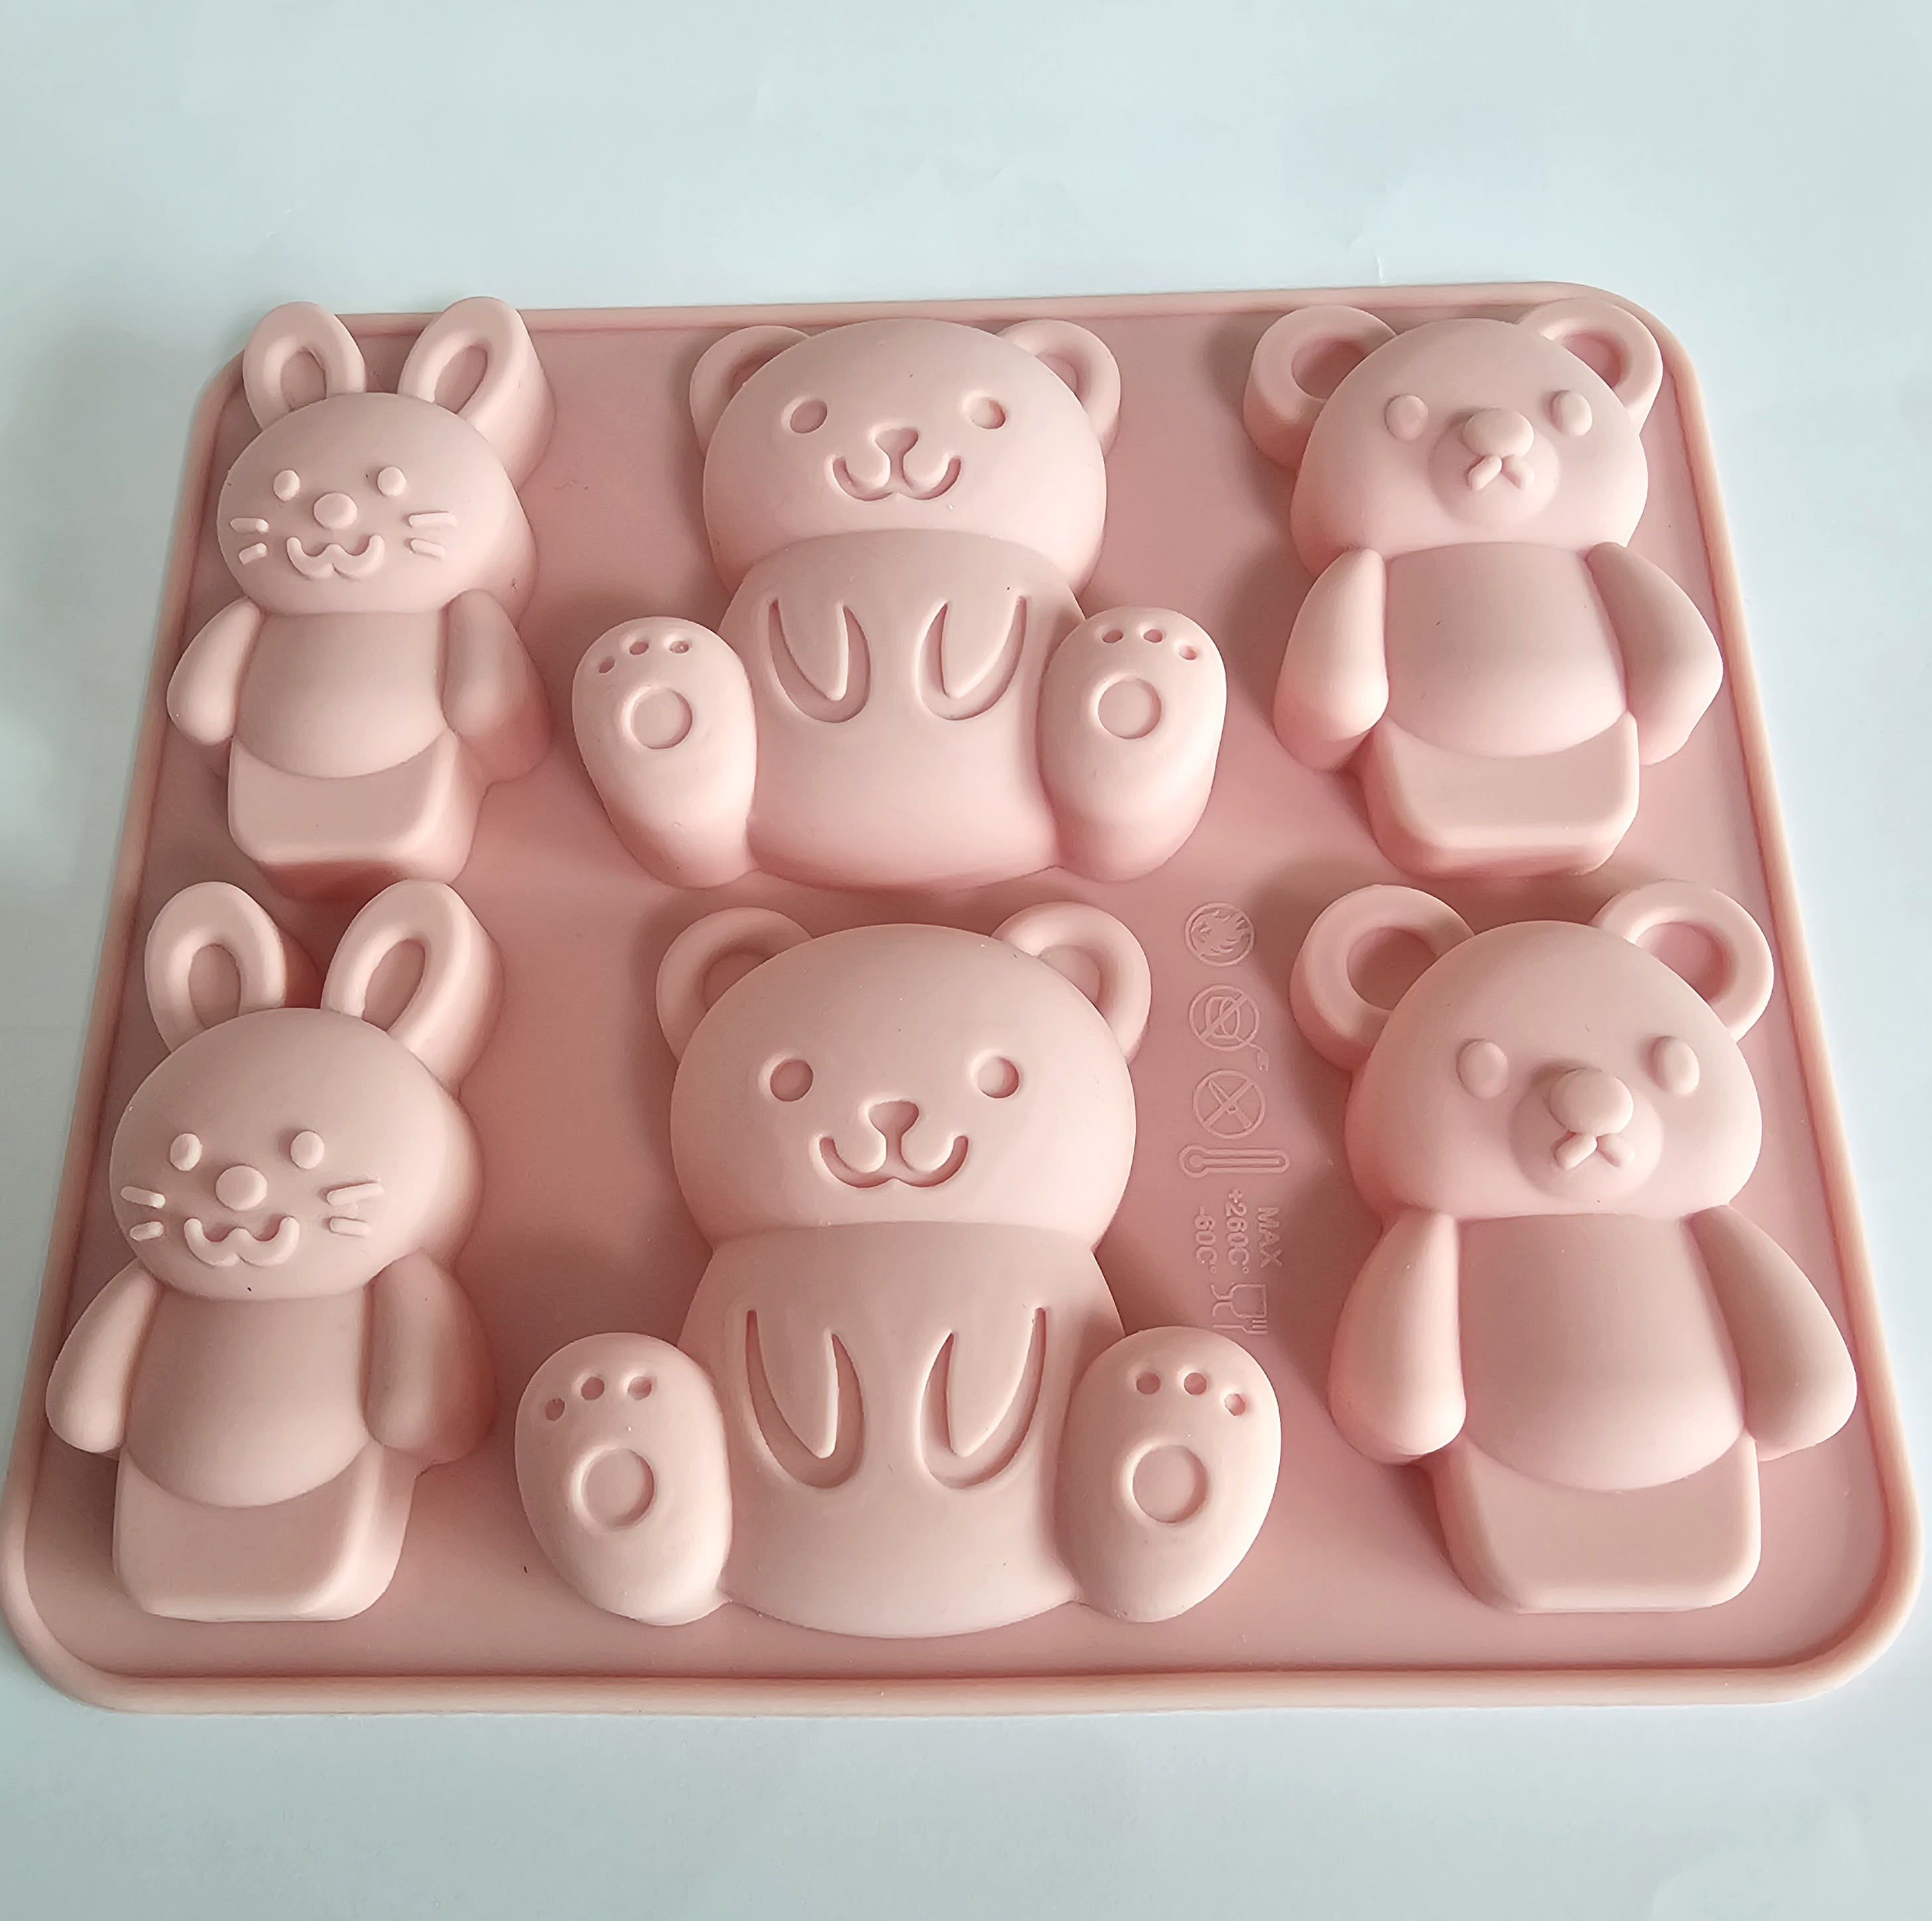 토끼 곰 실리콘 몰드 6구 빅사이즈 초콜릿 만들기 케이크장식 키링 비누 재료 도구